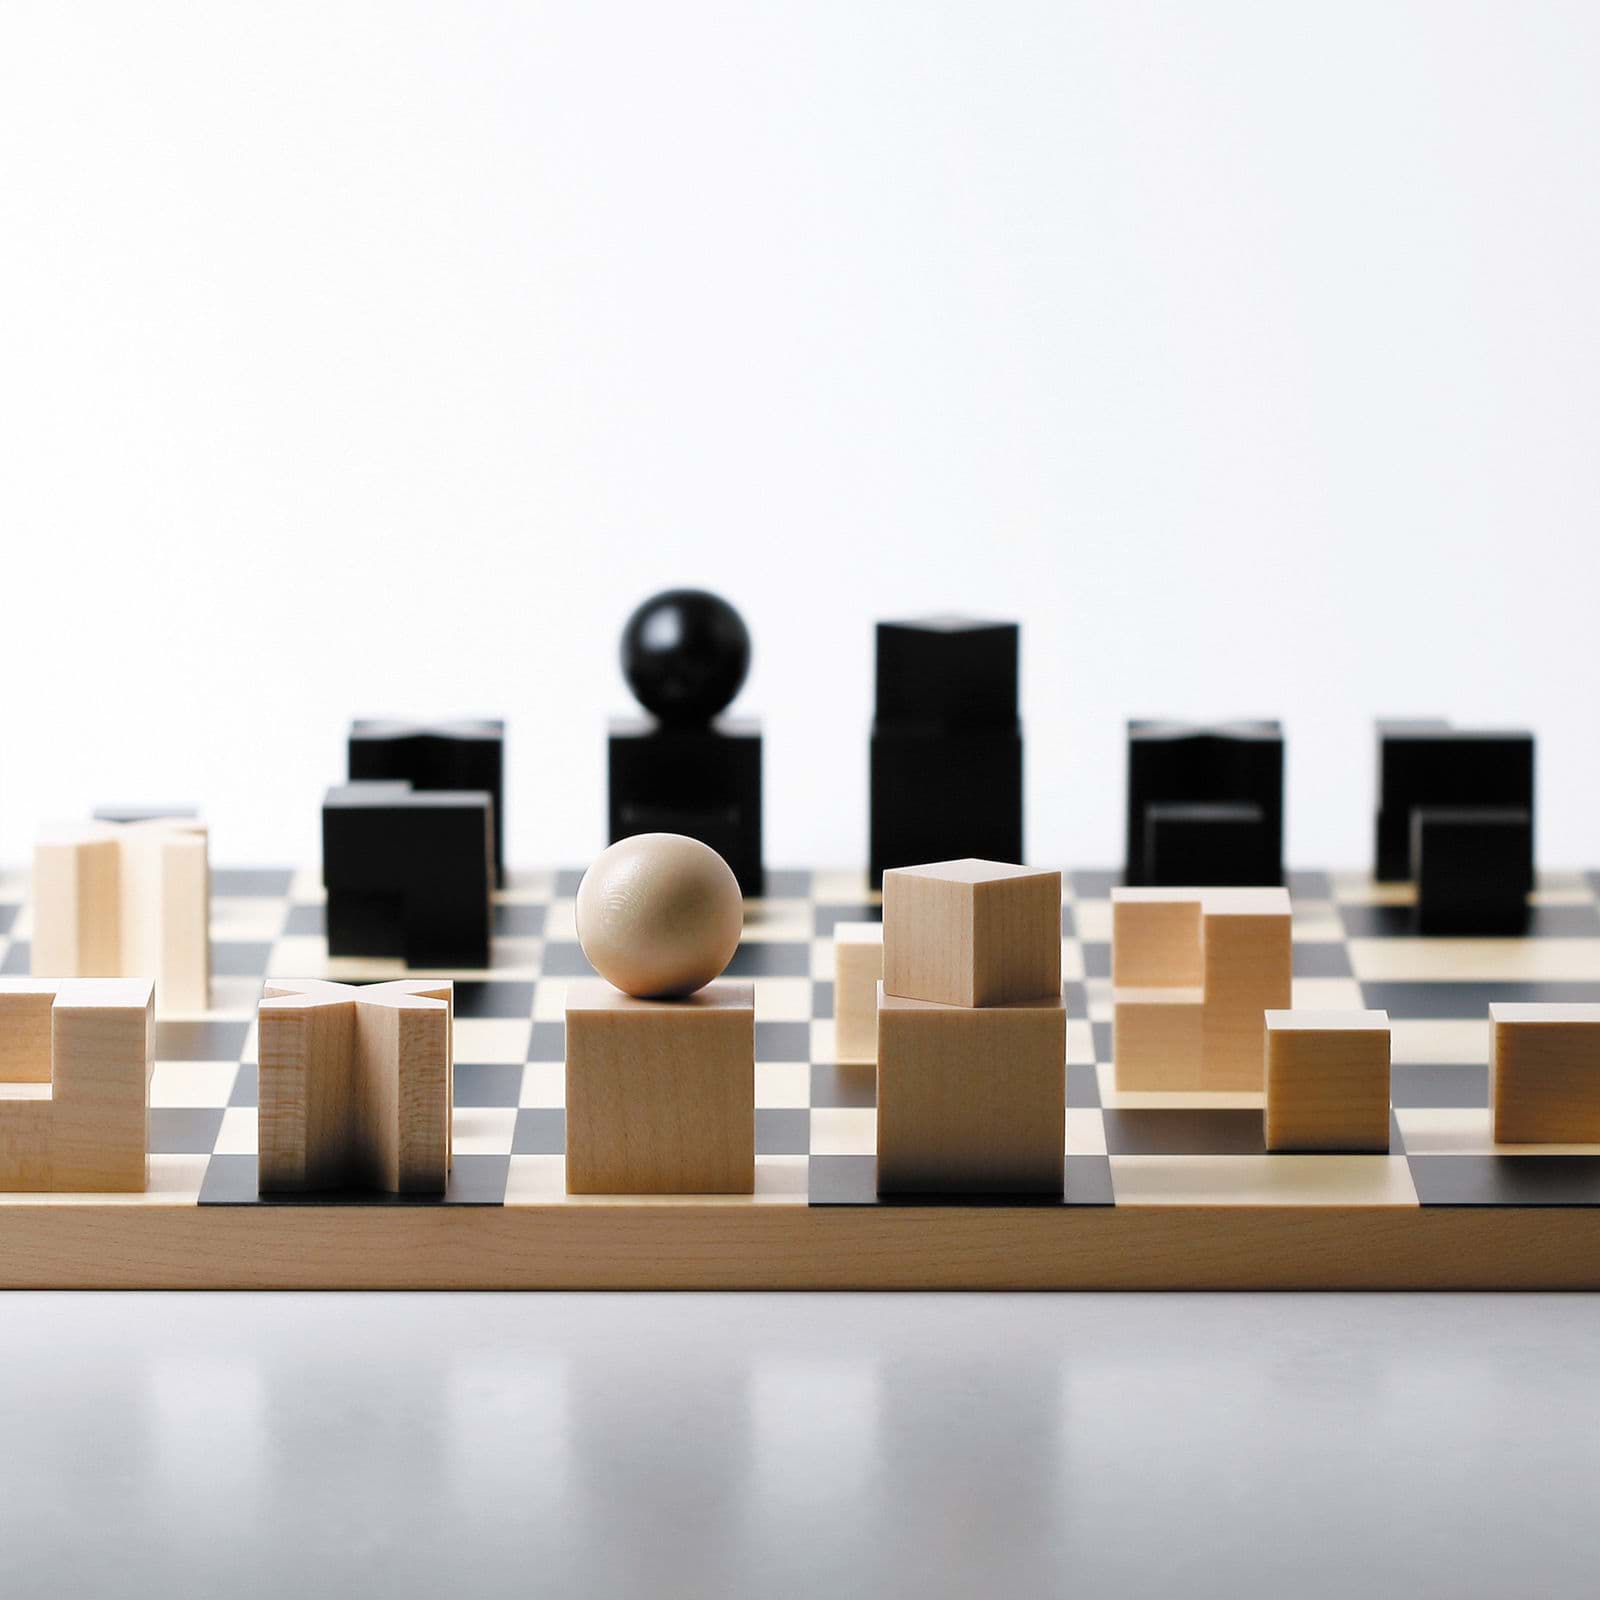 صورة لعبة شطرنج باوهاوس من إعداد جوزيف هارتويج
